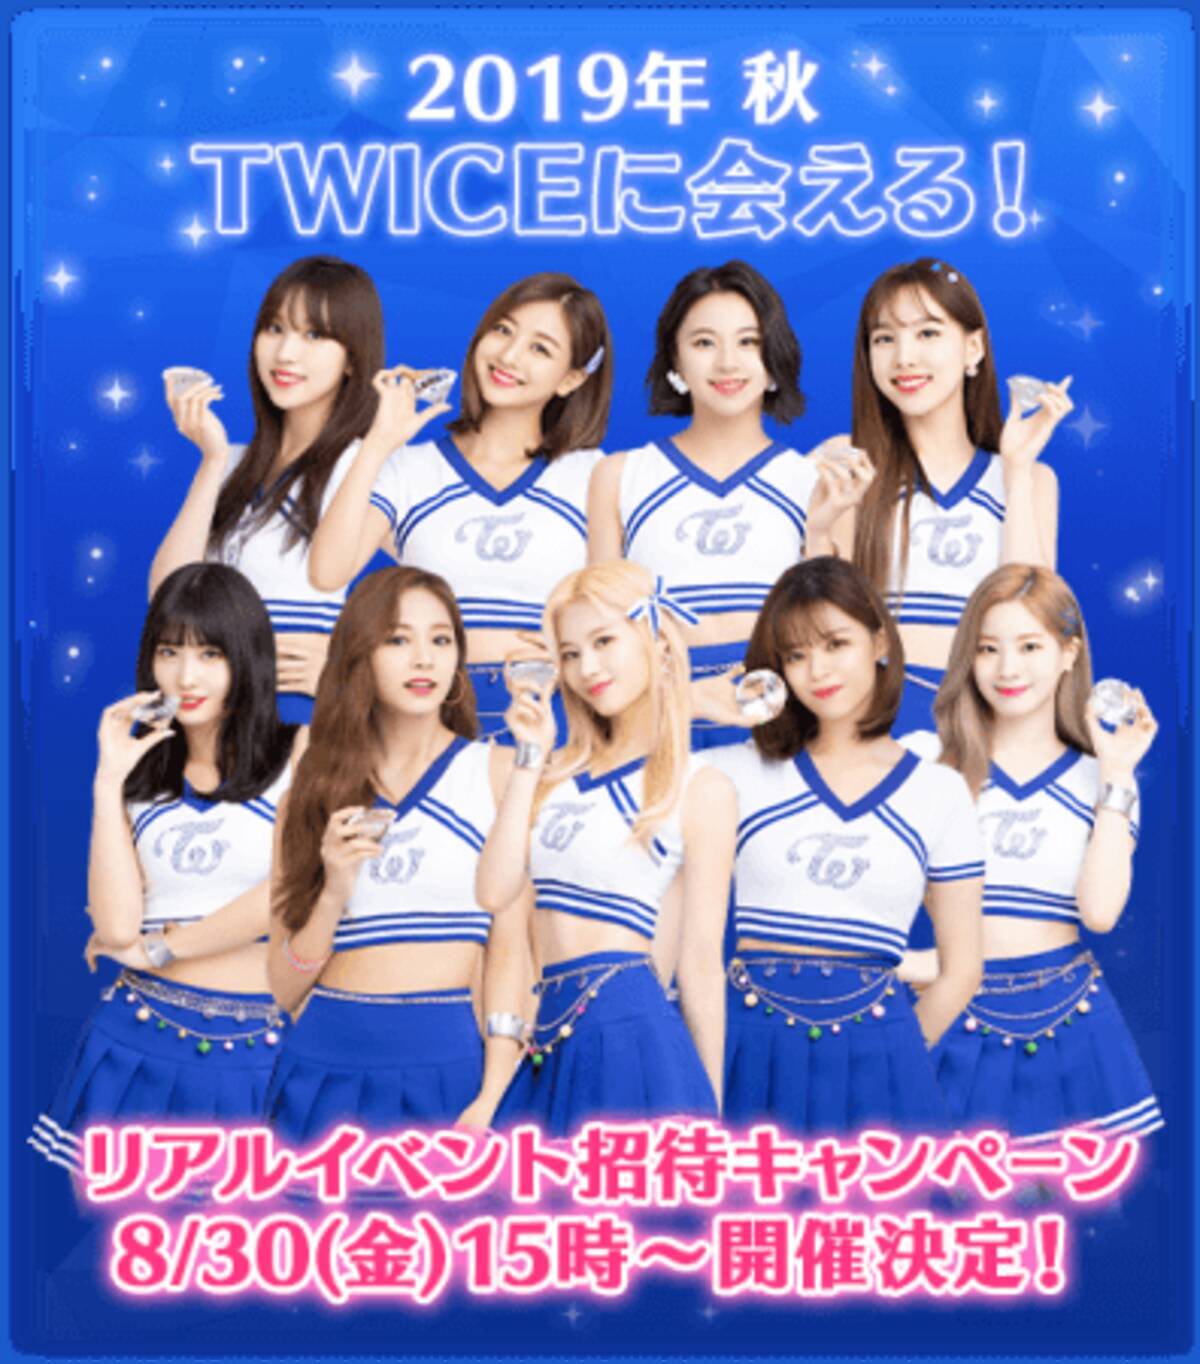 アジアno 1最強ガールズグループ Twice トゥワイス 全世界初 公式スマホゲーム 19年8月28日 エキサイトニュース